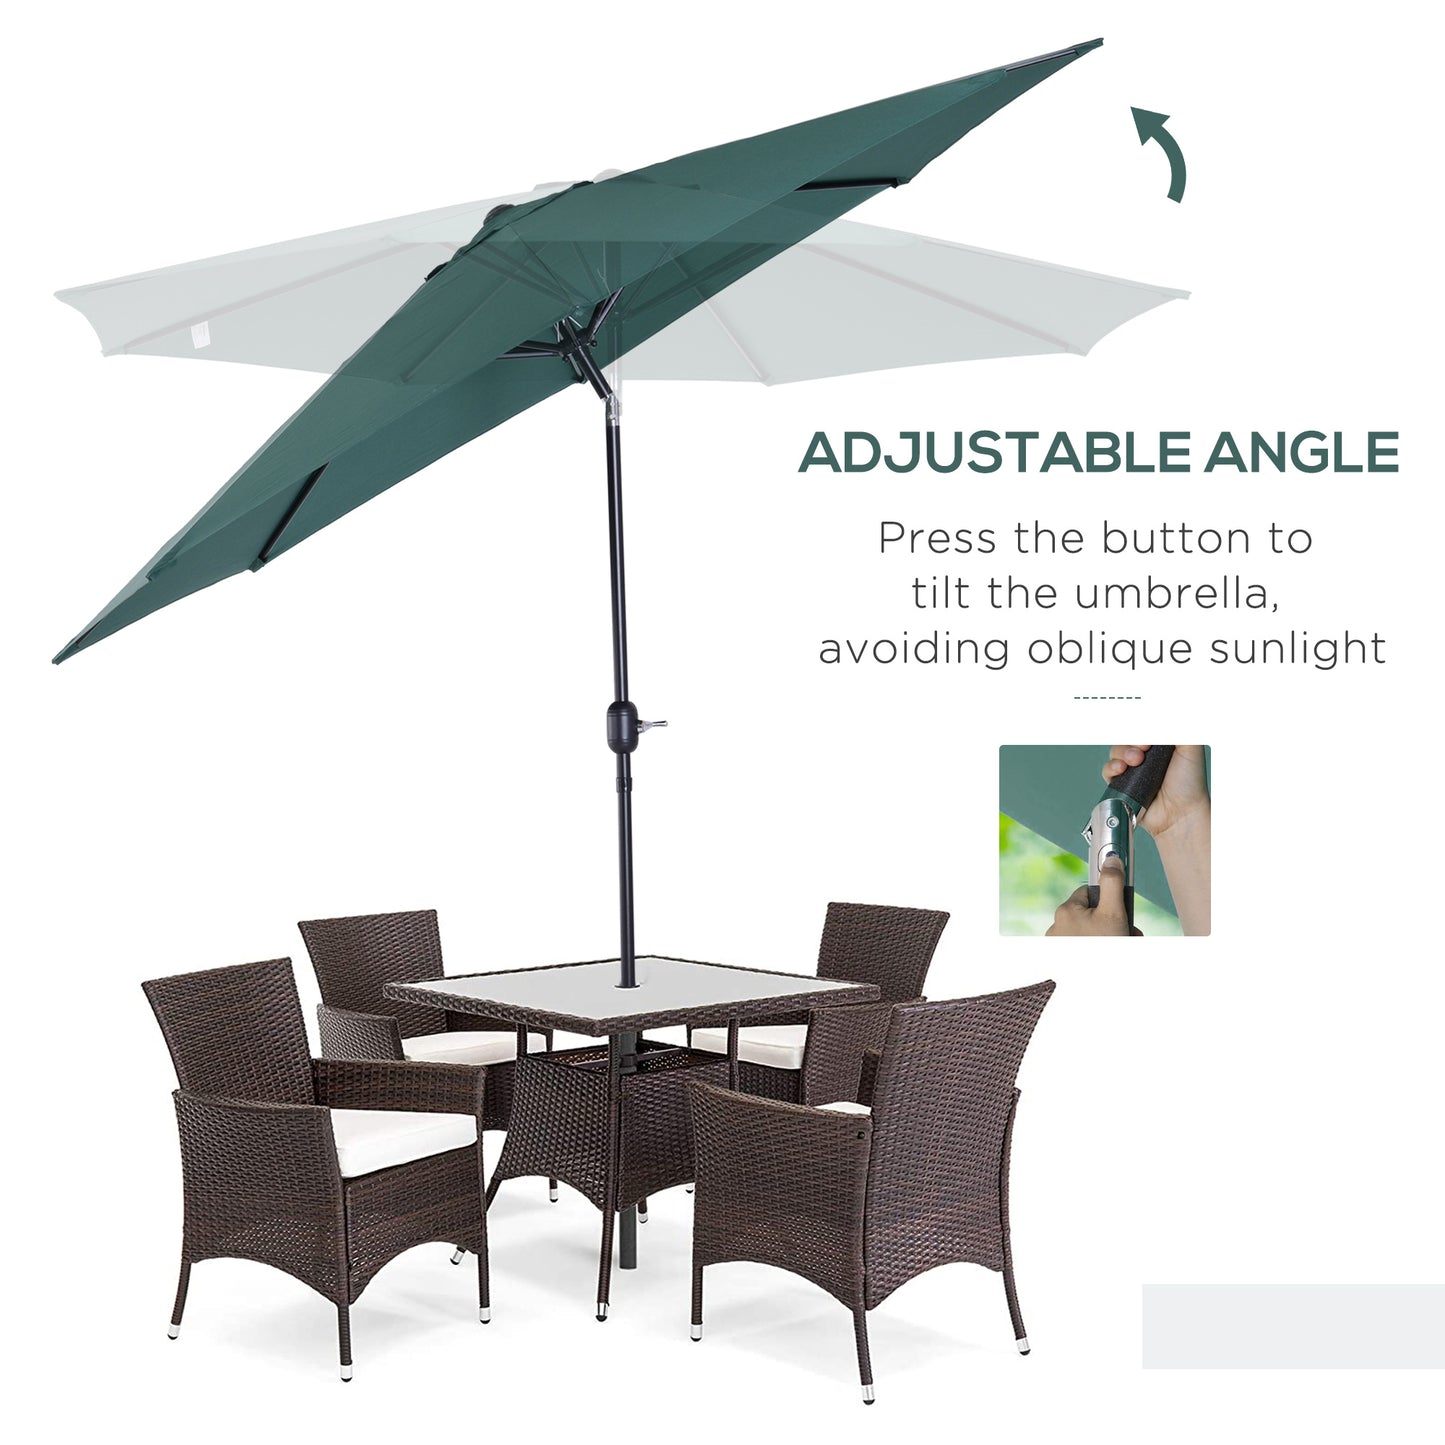 Outsunny 3m Parasol Patio Umbrella, Outdoor Sun Shade with Tilt and Crank Handle for Balcony, Bench, Garden, Green Sunshade Canopy